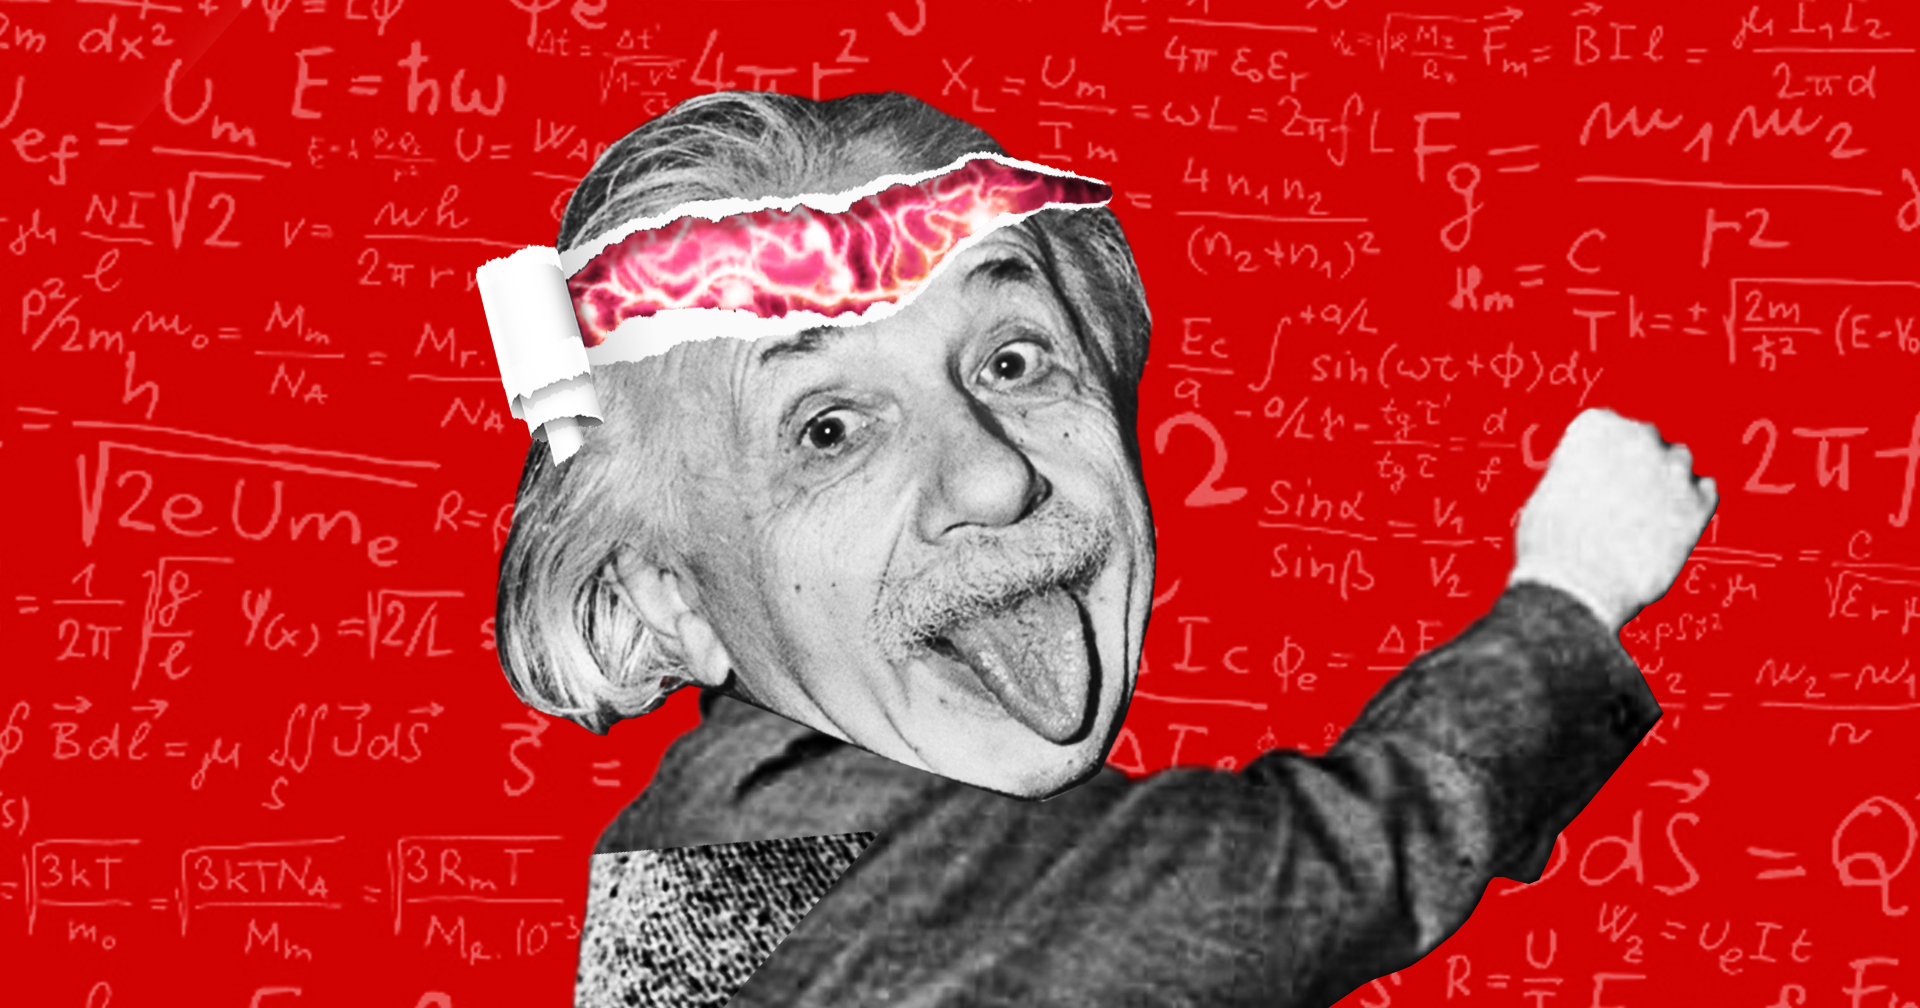 ความลับของสมองไอน์สไตน์ ที่ถูกขโมยไปนานกว่า 50 ปี